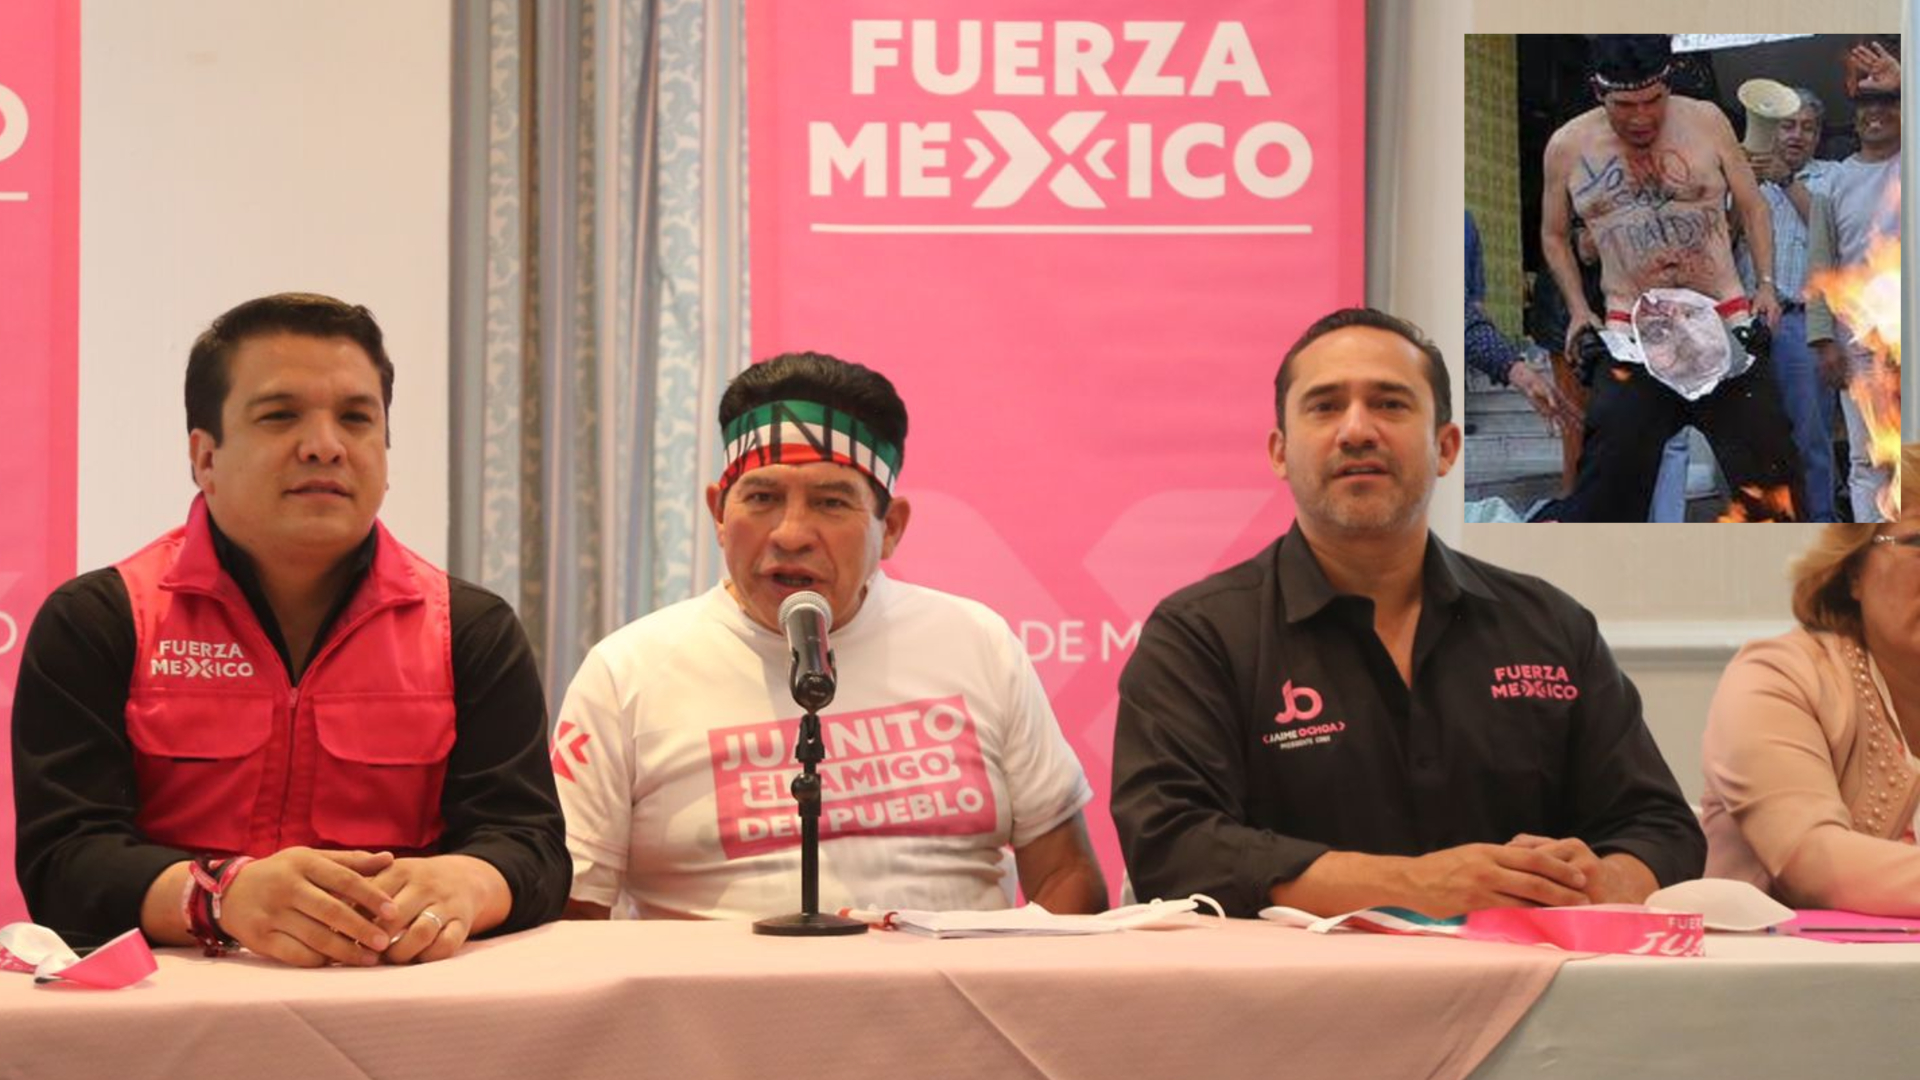 Juanito regresó a la escena política de la Ciudad de México tras anunciar candidatura para Iztapalapa en el 2021 (Foto: Twitter / @FXMCDMX / @demace1)